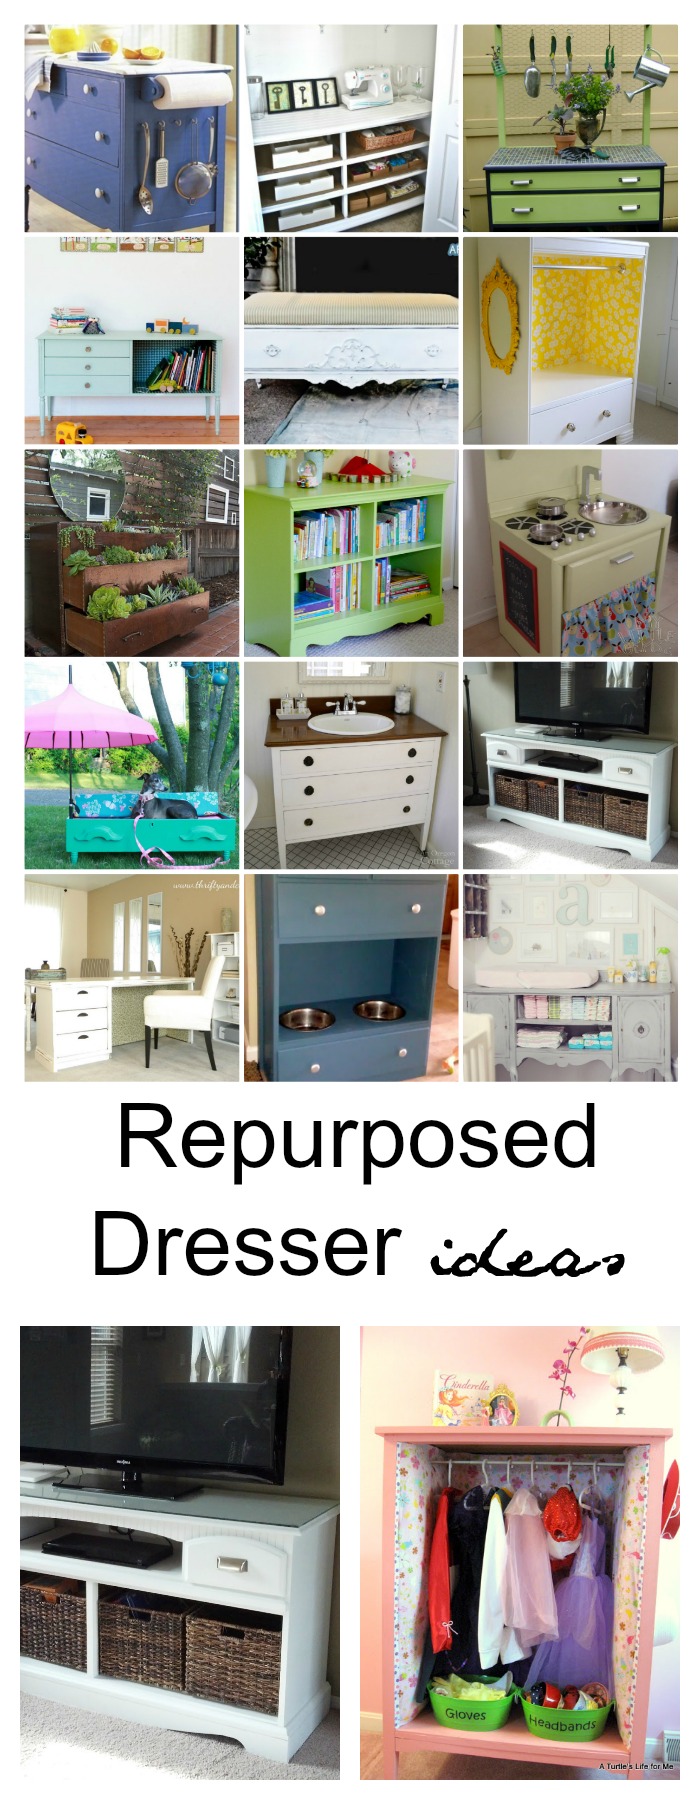 Repurposed Dresser Ideas - The Idea Room